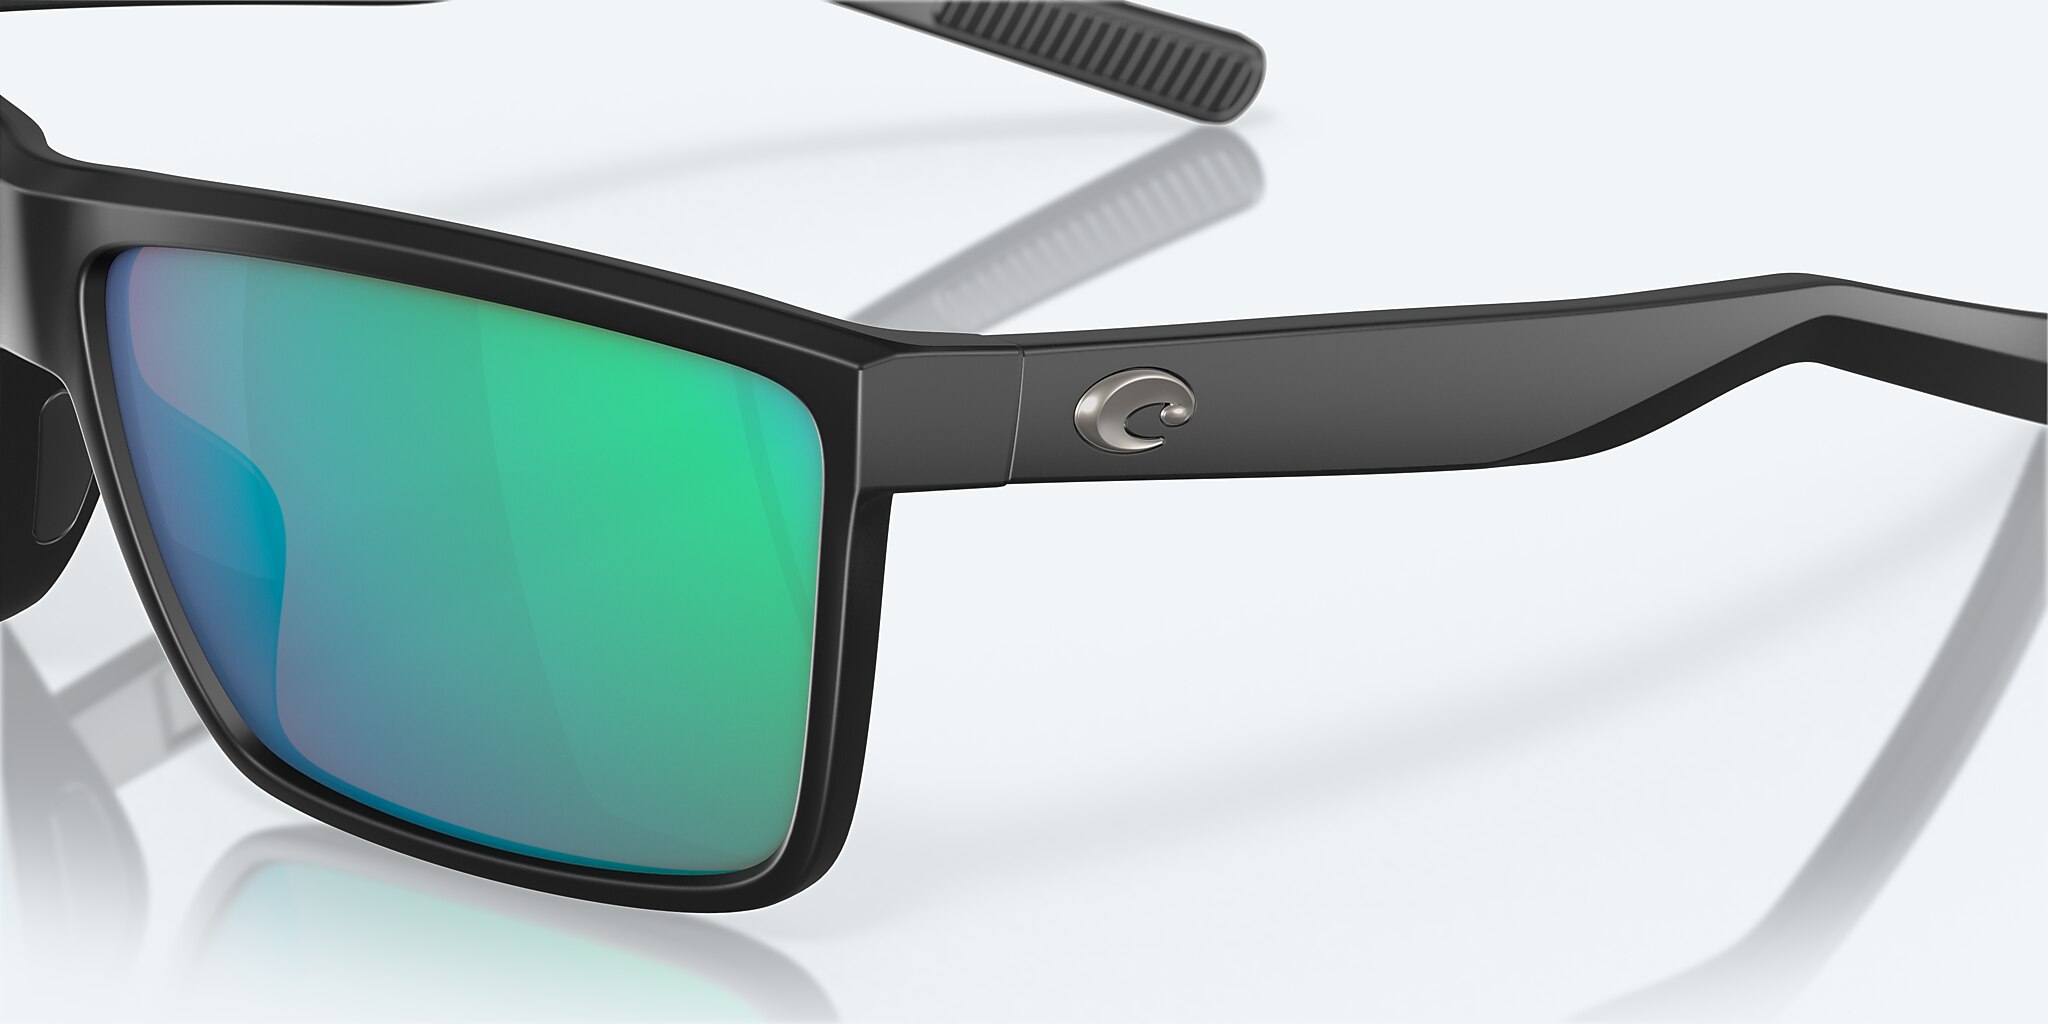 Rinconcito Polarized Sunglasses in Gray